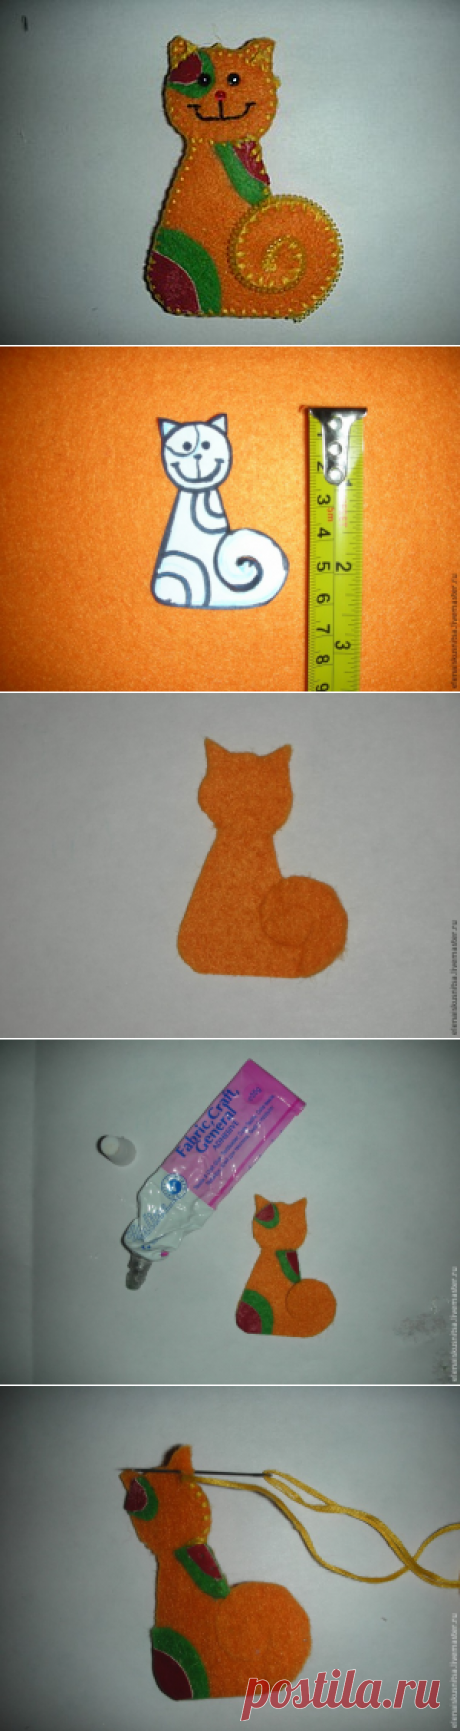 Брошь из фетра «Солнечный кот» - Ярмарка Мастеров - ручная работа, handmade